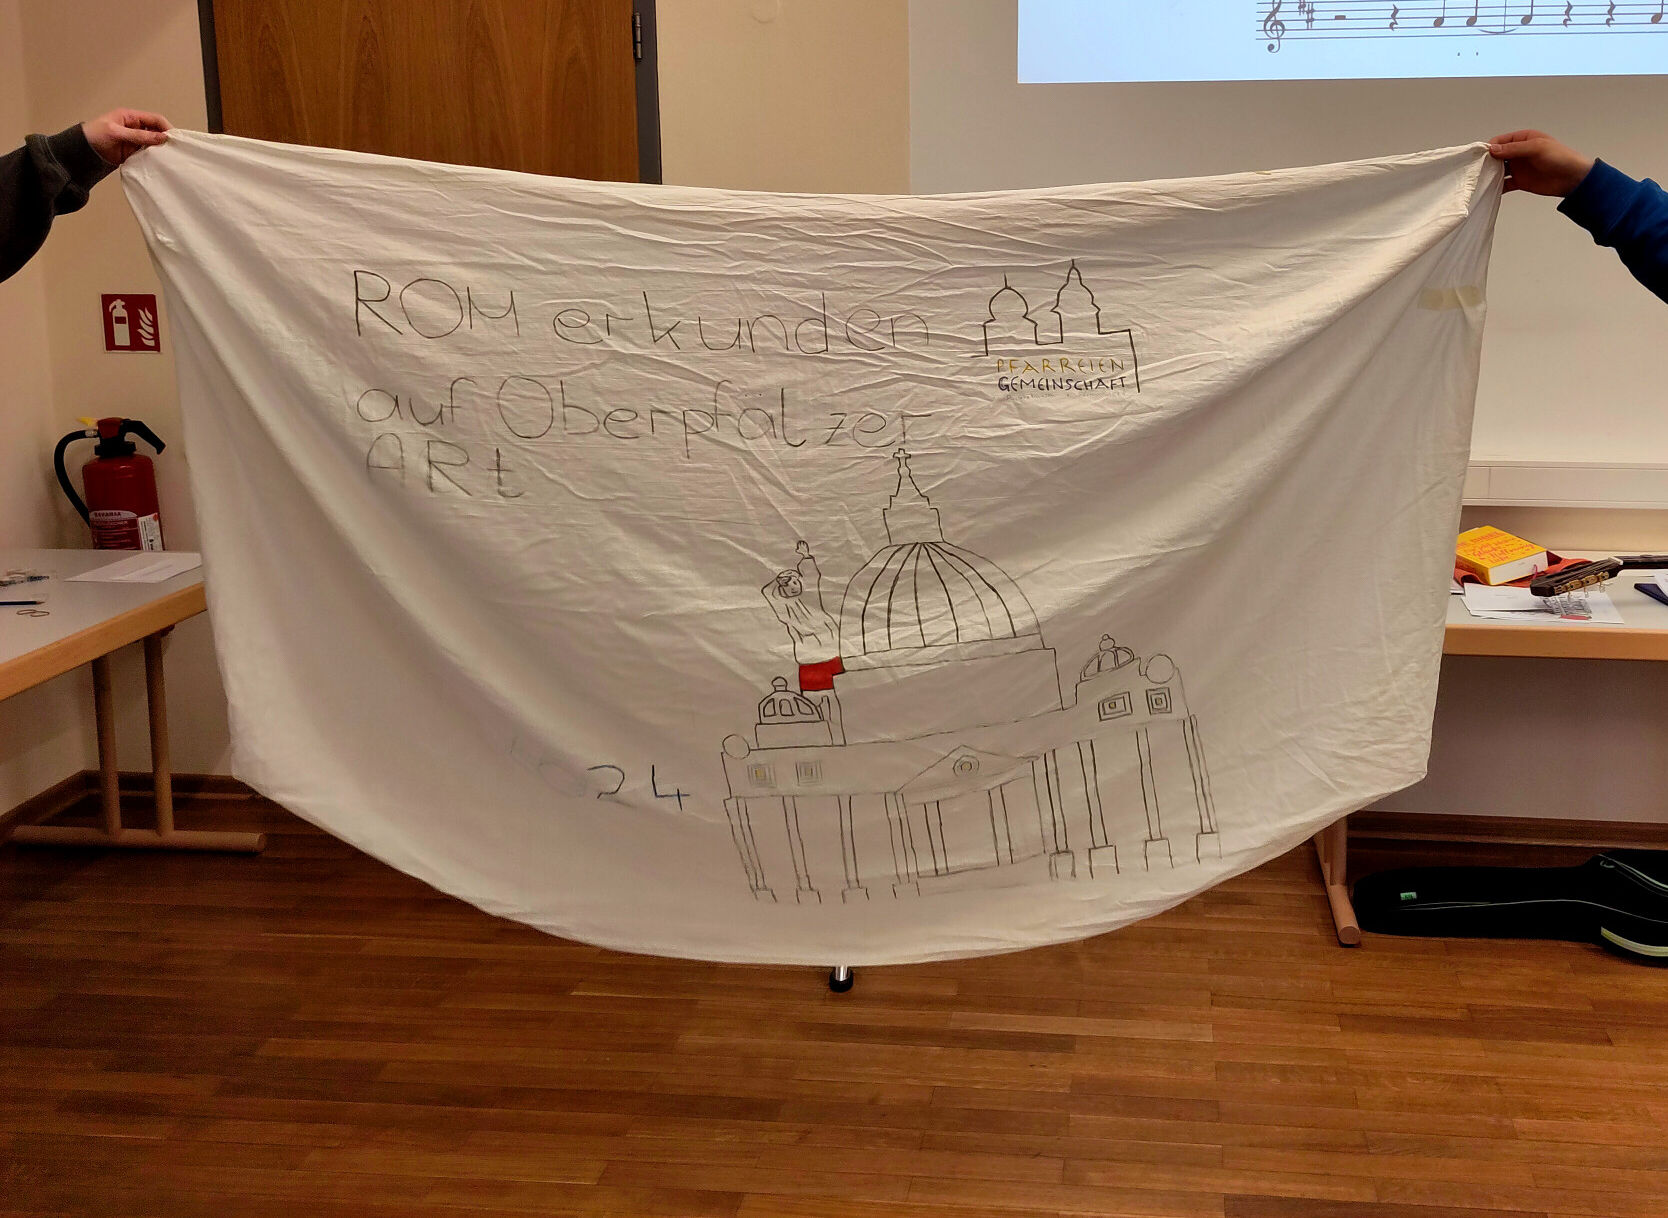 Erster Entwurf des Banners der Wallfahrtsgruppe aus Beratzhausen-Pfraundorf (work in progress)